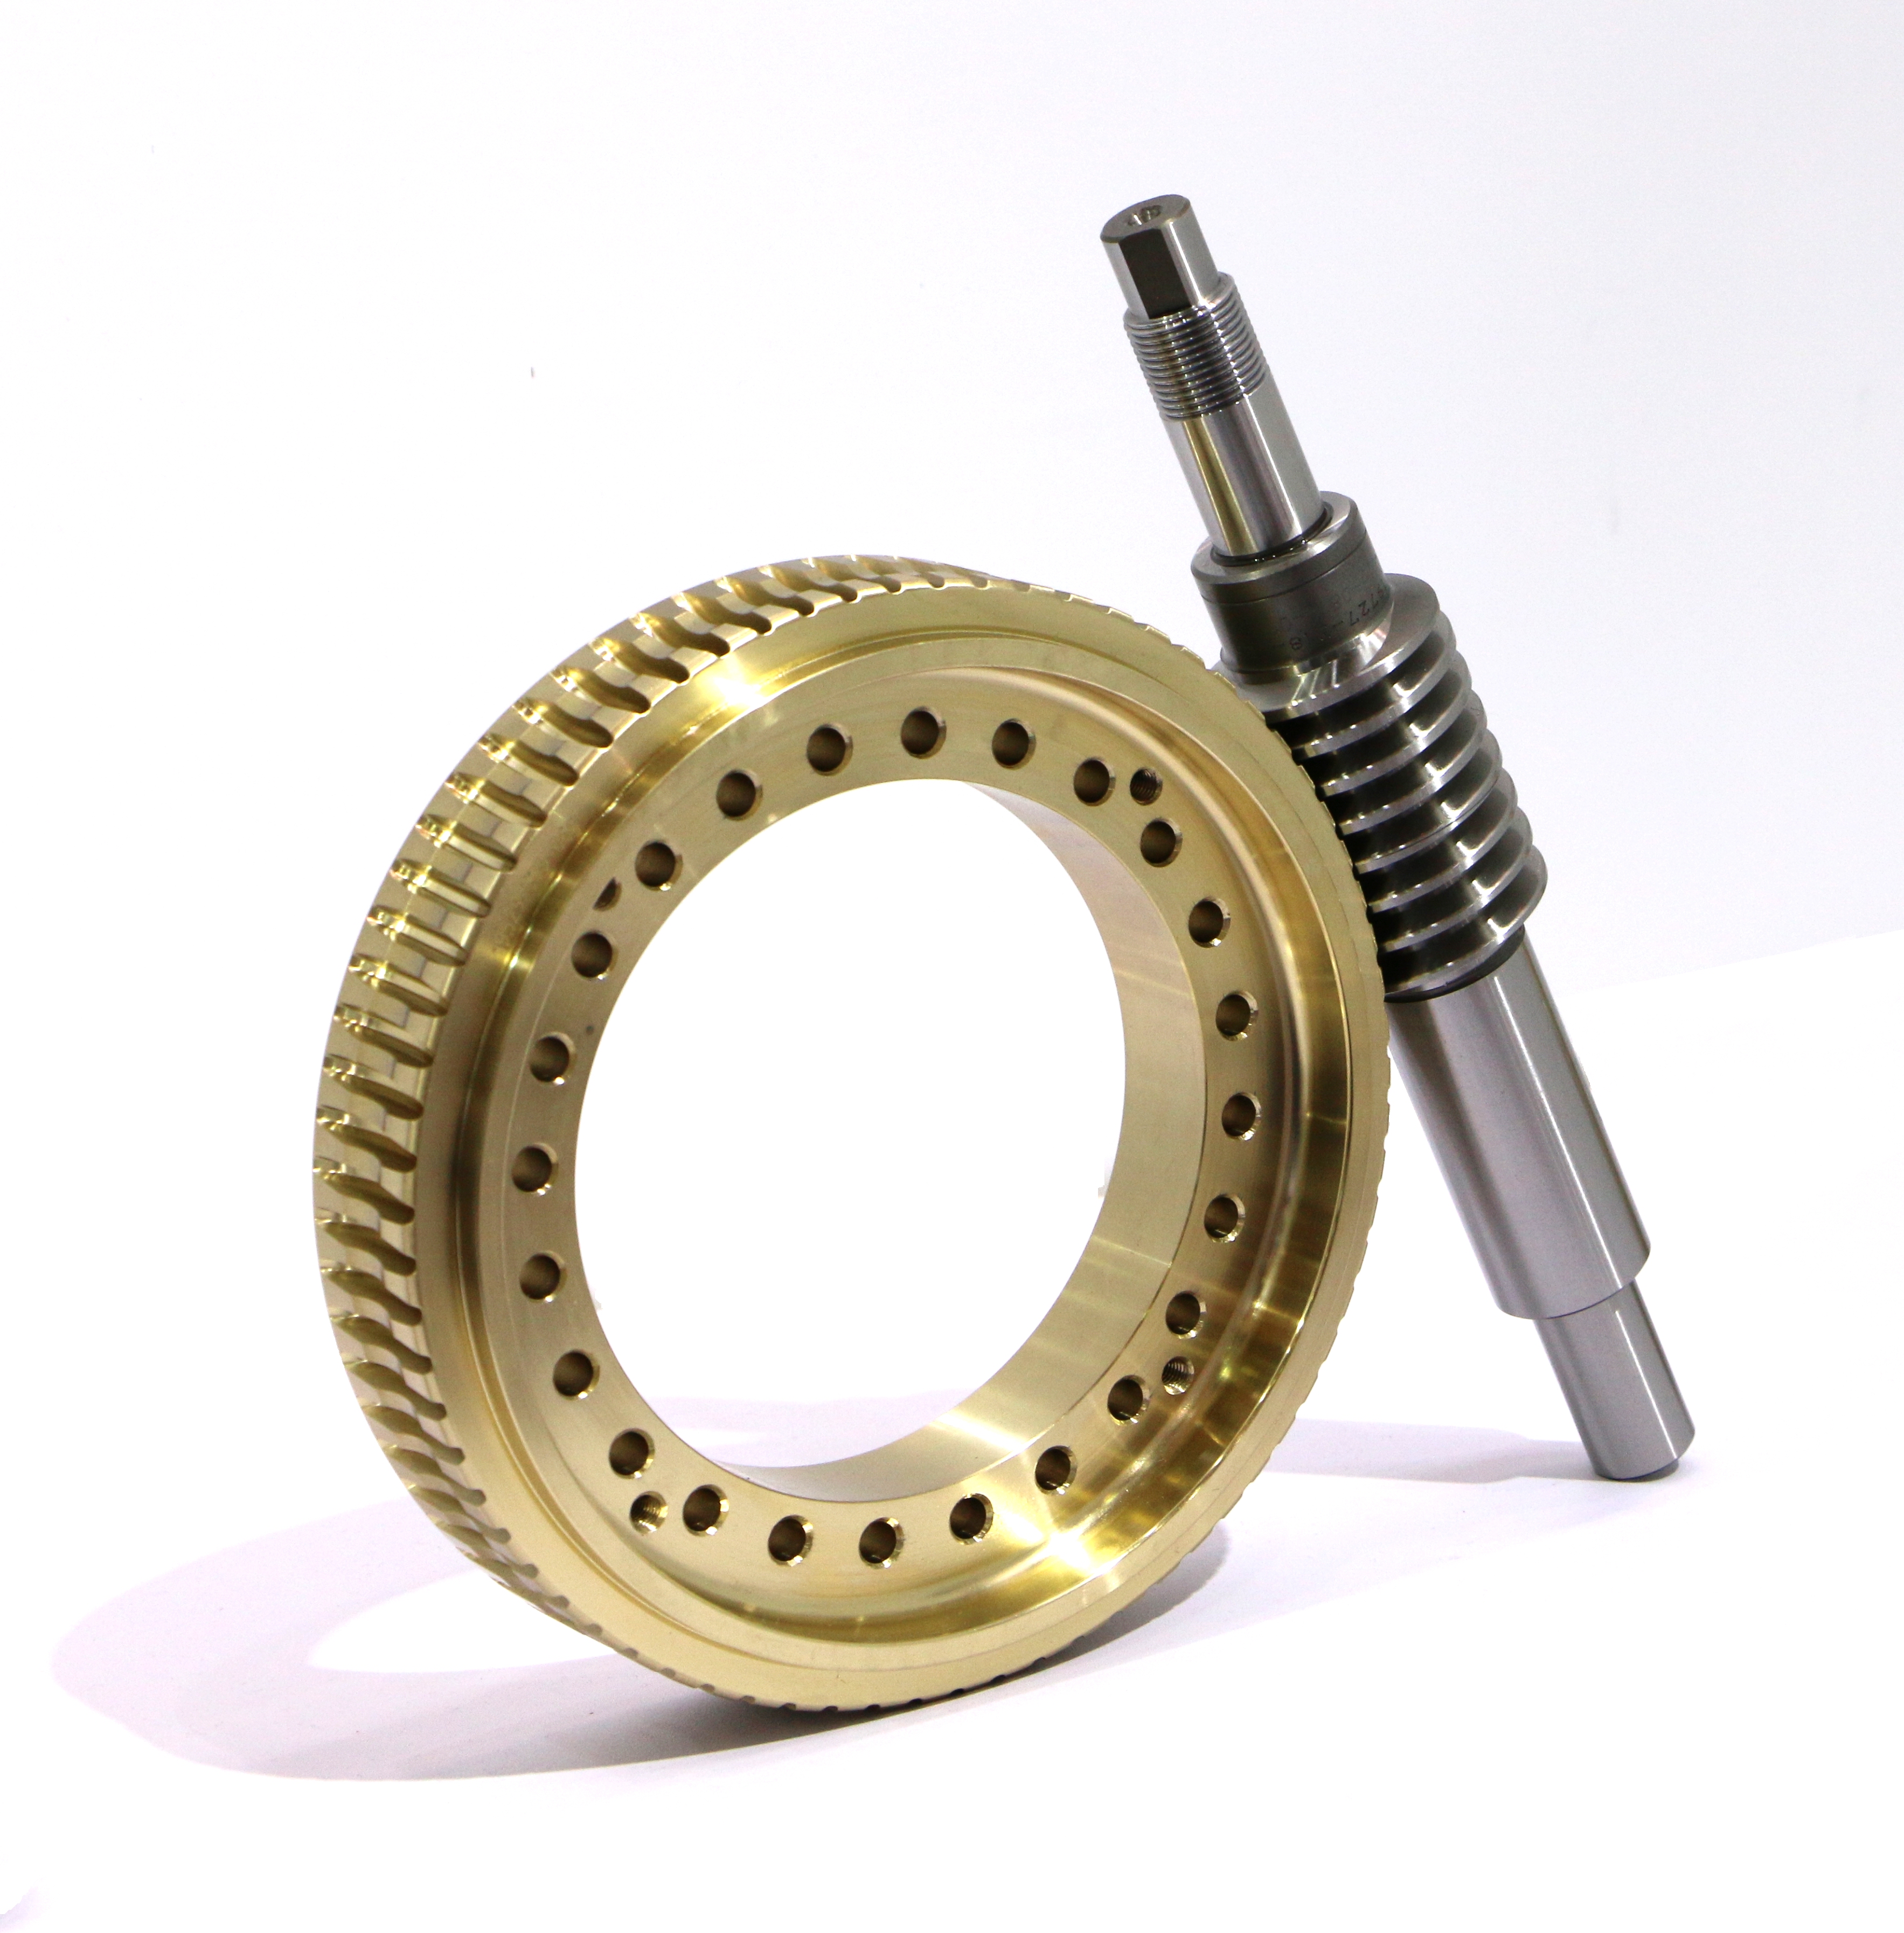 Schnecken- und Schneckengetriebe Schneckenrad Messingbronze Stahl